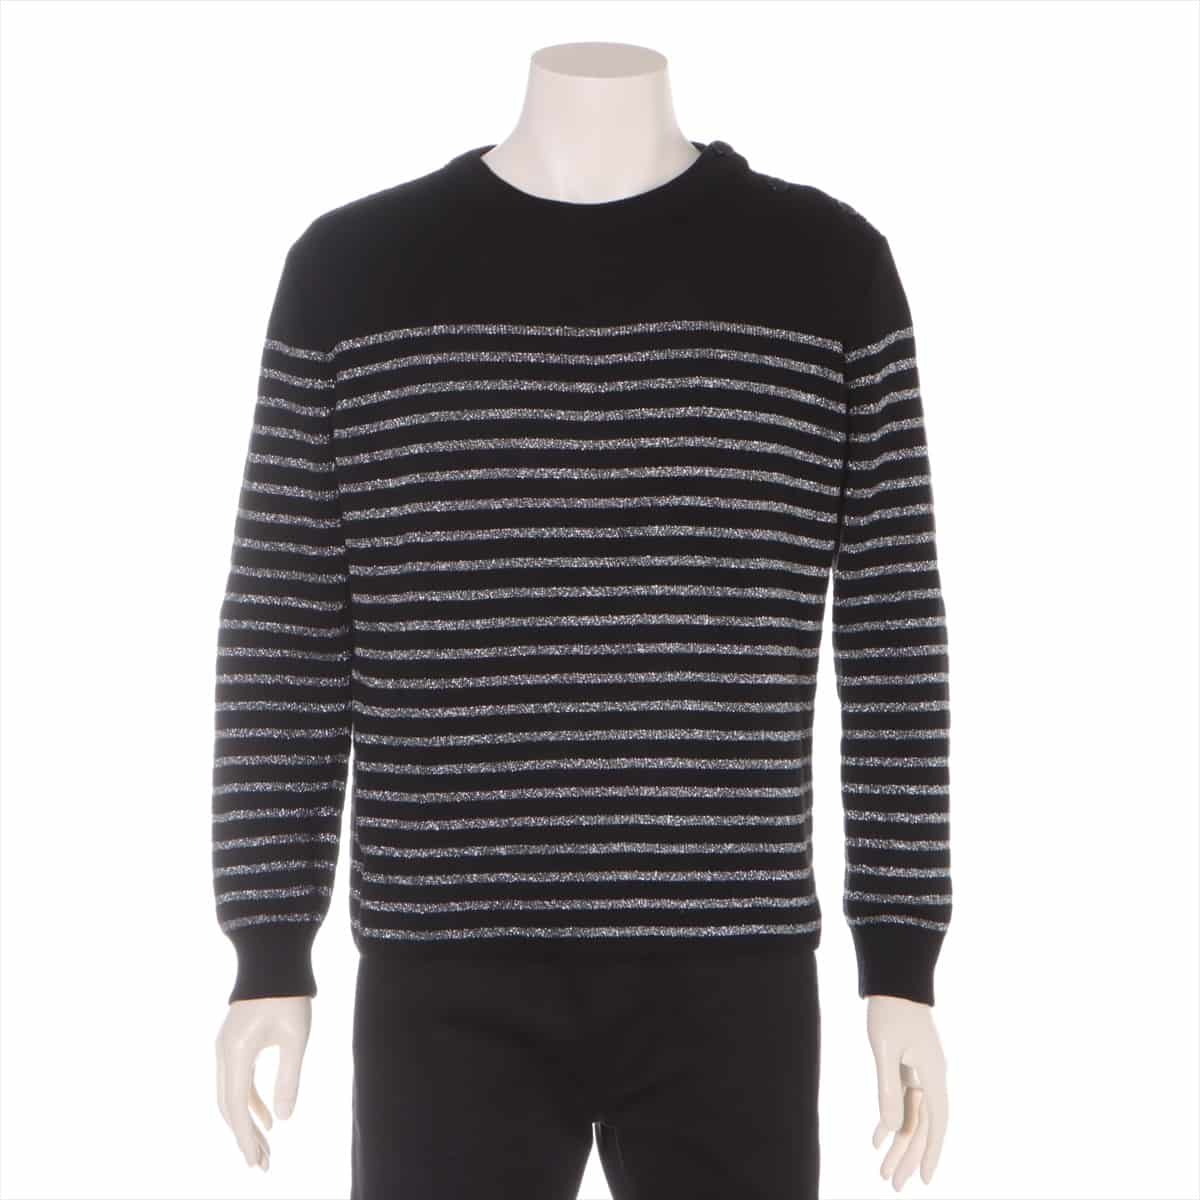 Saint Laurent Paris 19-year Cotton & wool Knit XL Men's Black × Silver